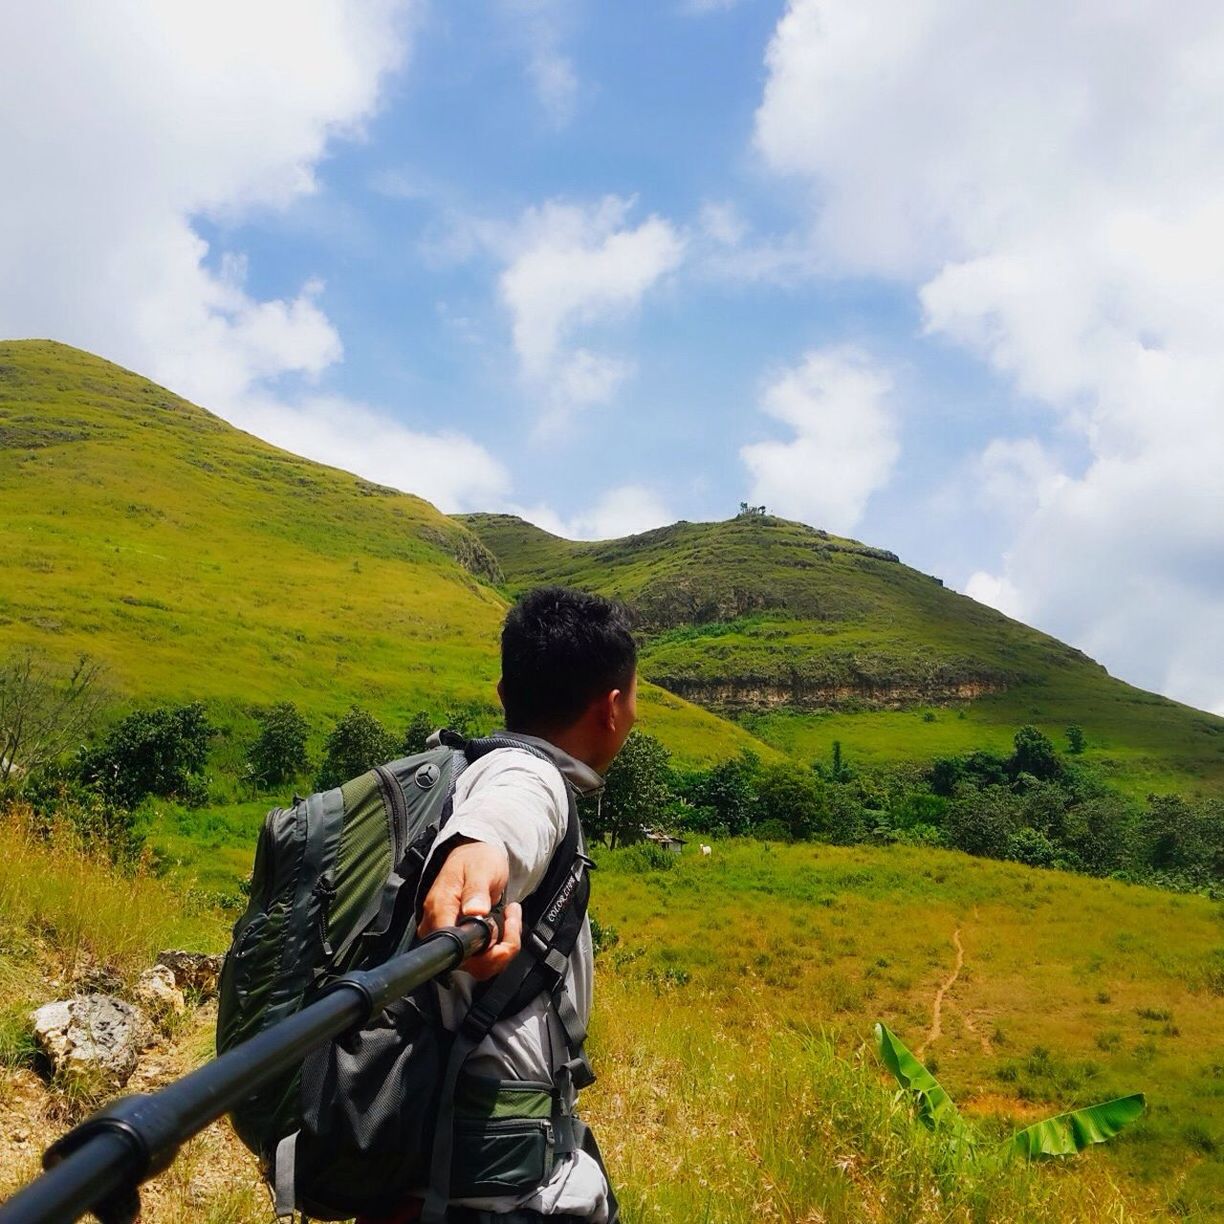 Male hiker taking selfie with monopod on mountain